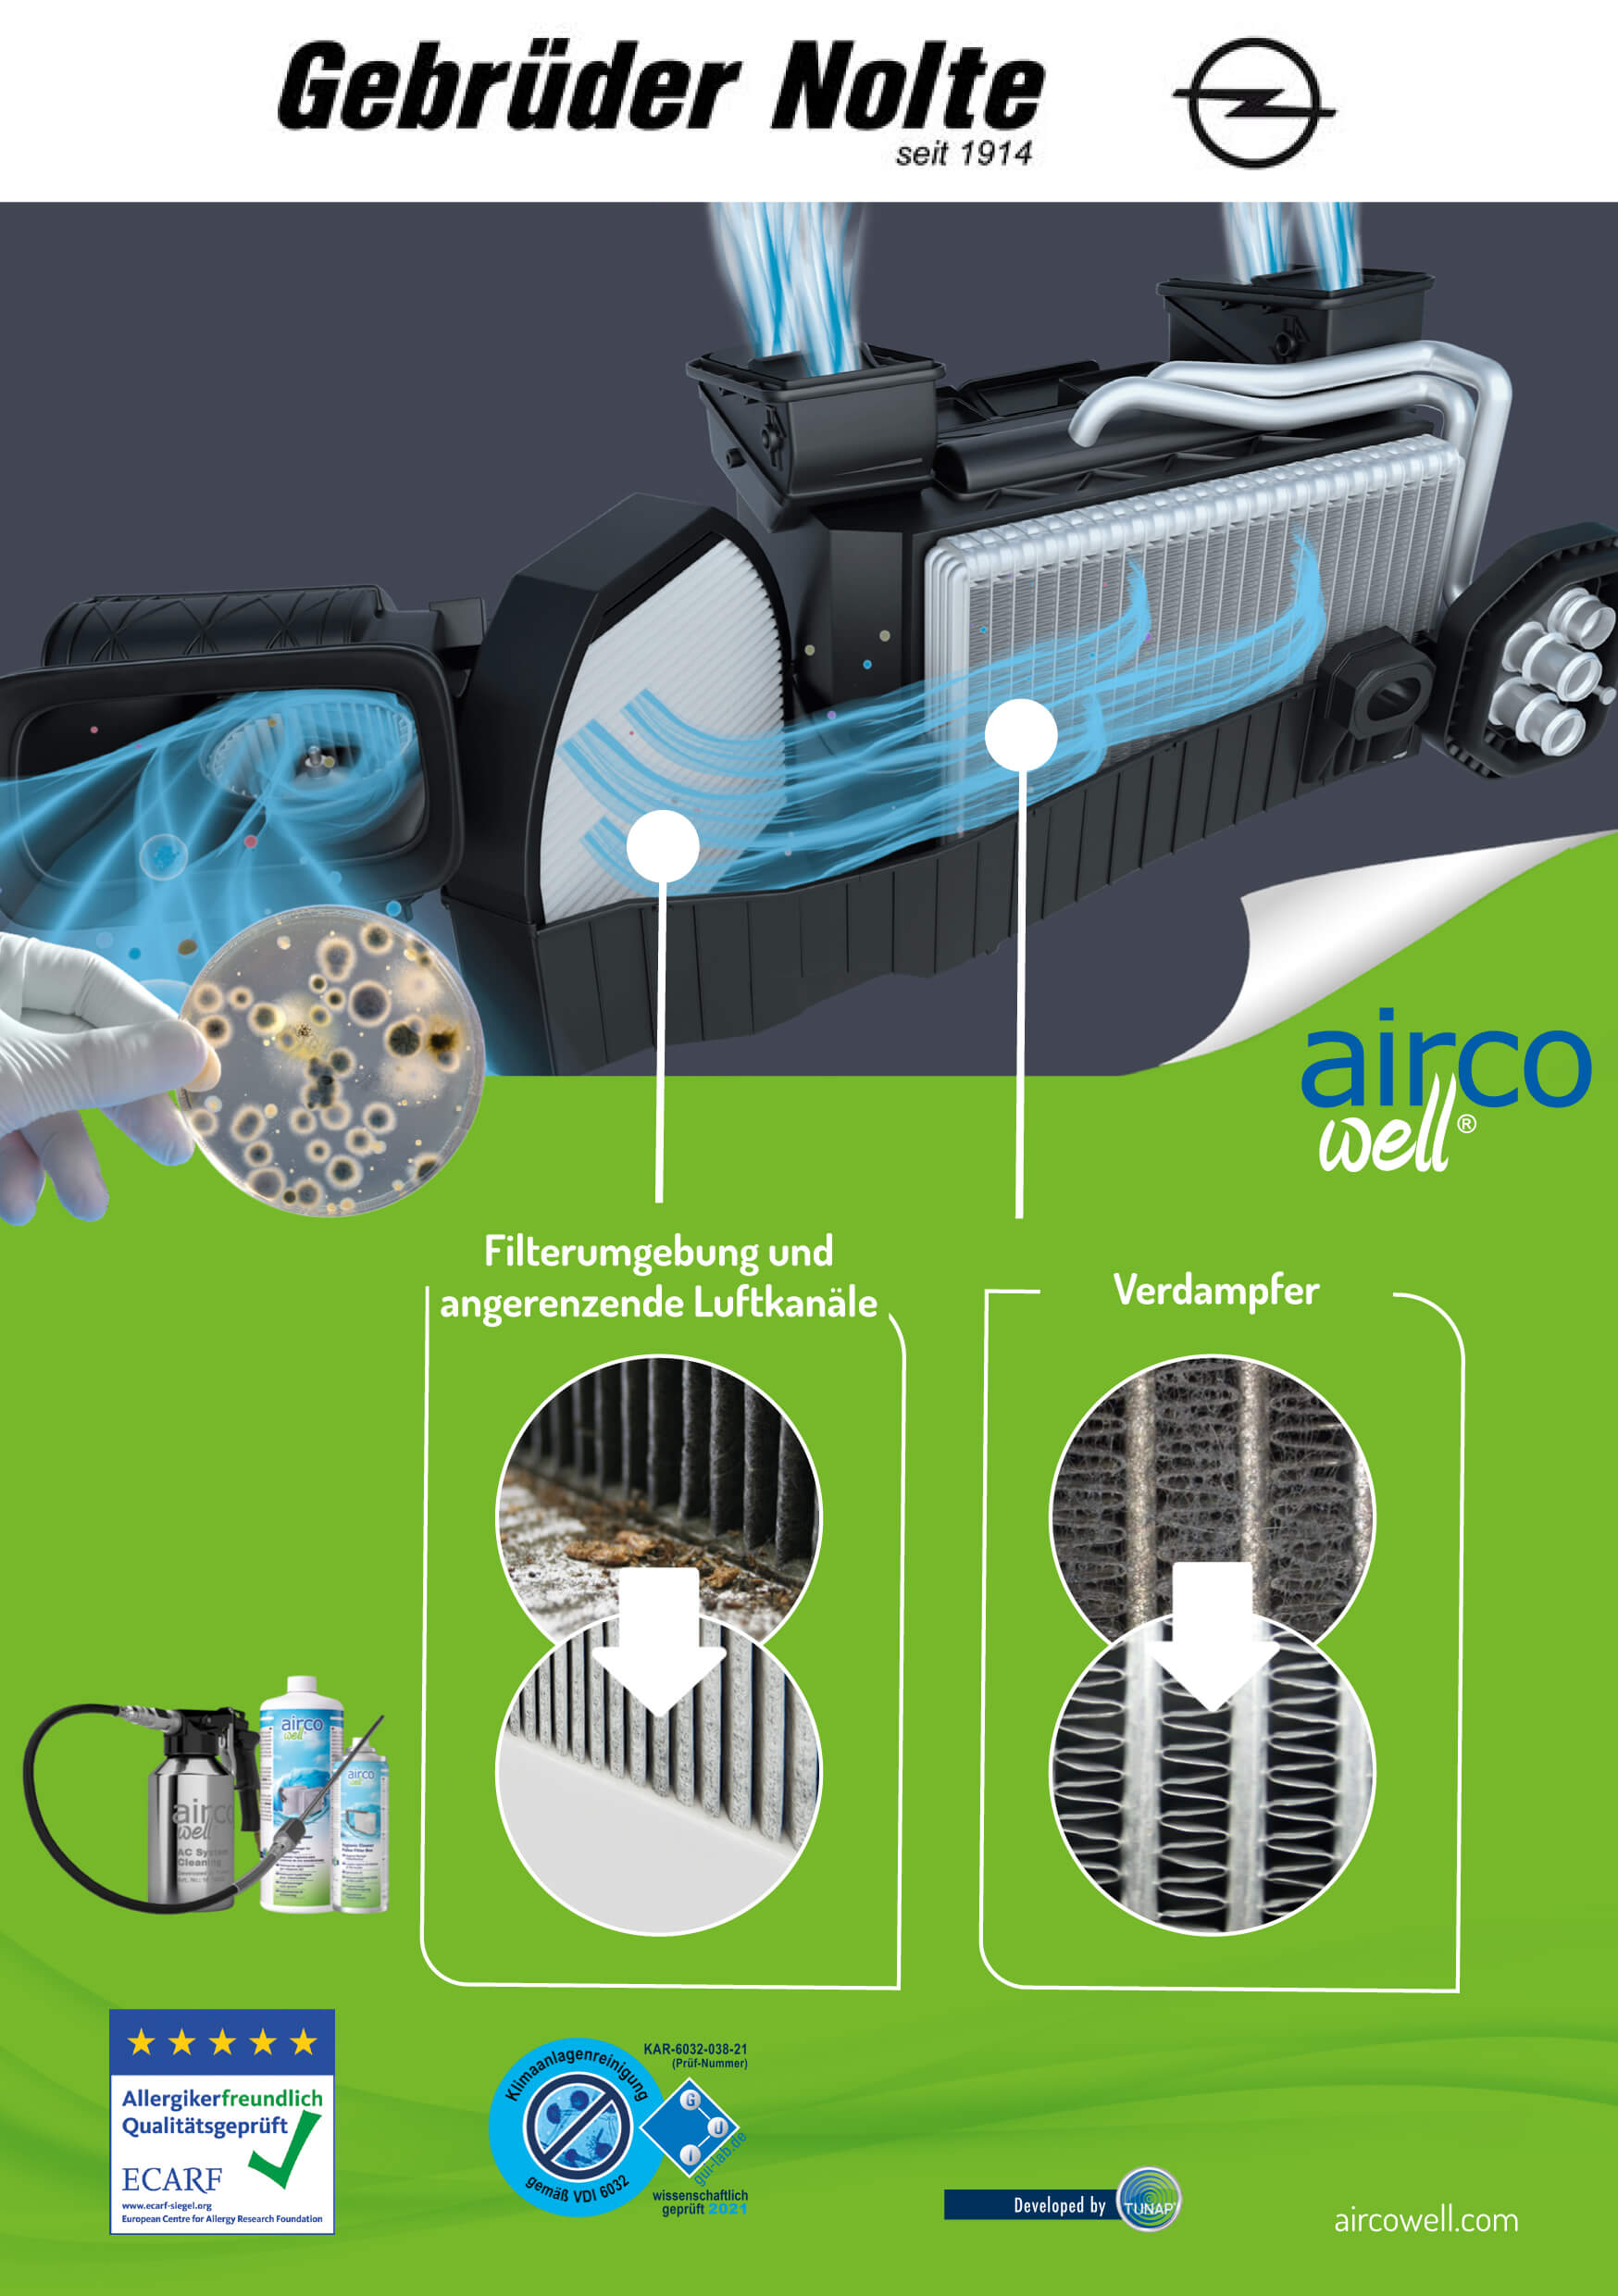 Das Klimaanlagen-Reinigungssystem airco well®